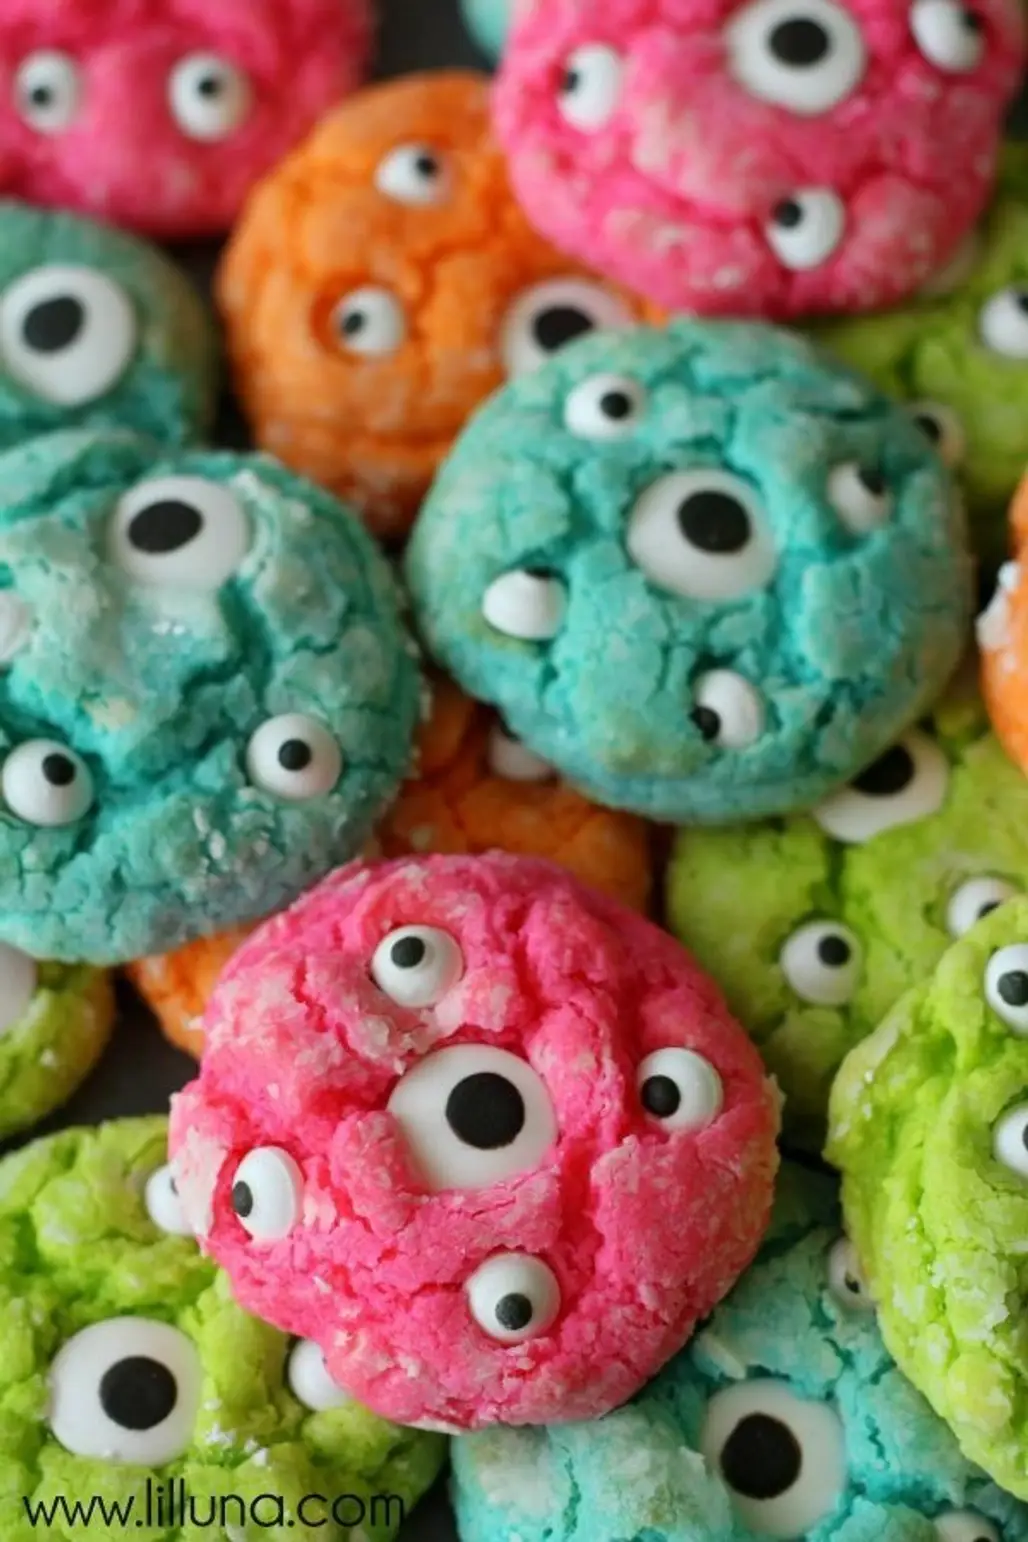 Gooey Monster Cookies and Monster Suckers